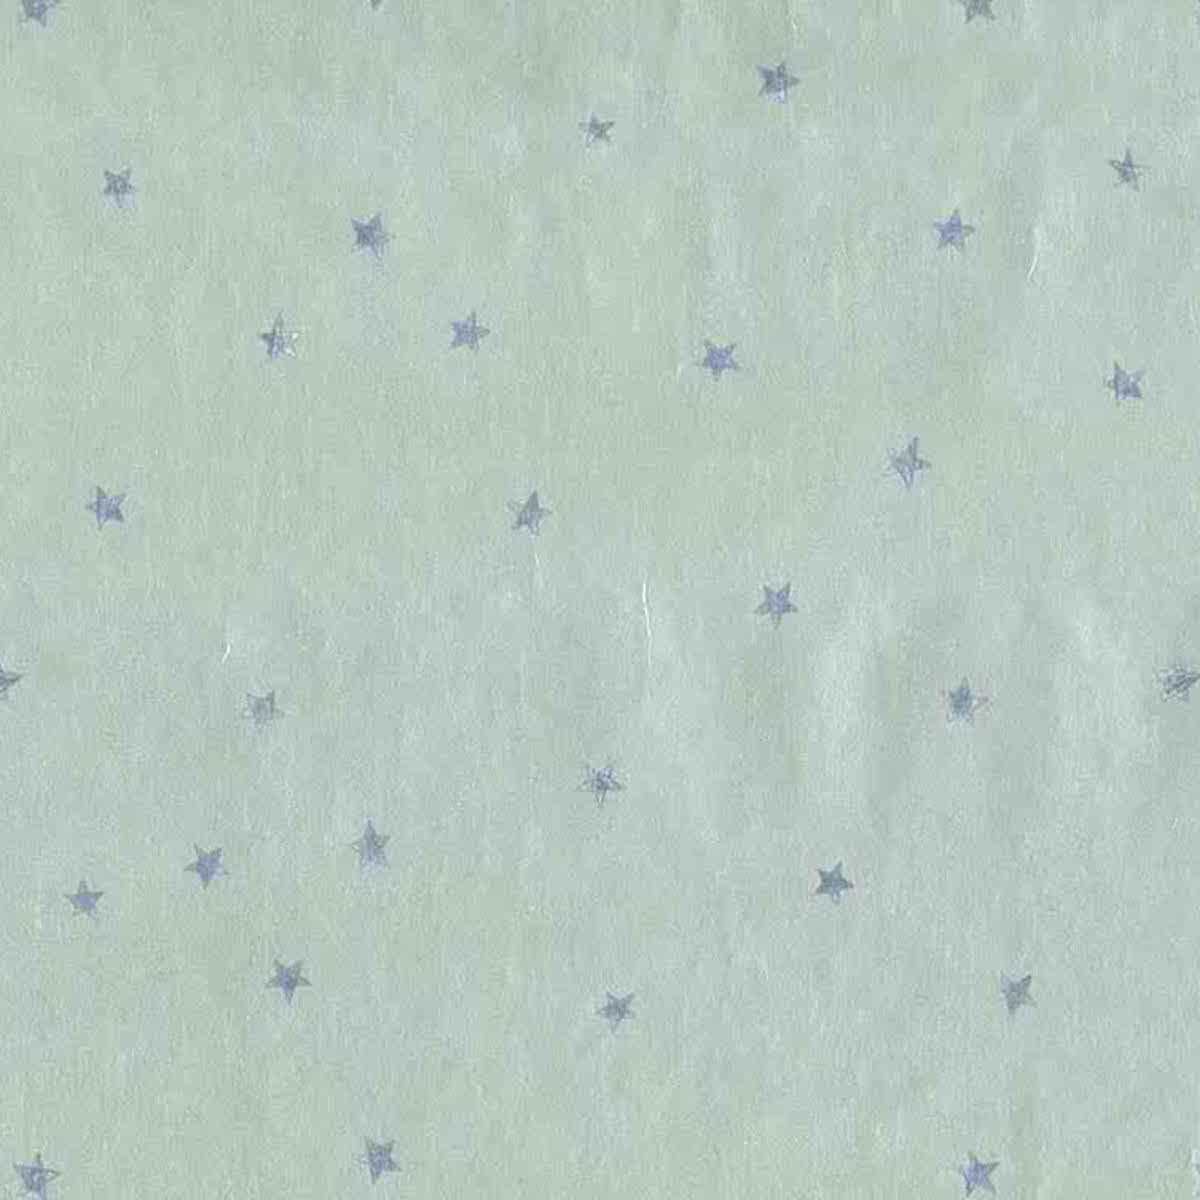 Silver Foil Vintage Wallpaper Blue Stars